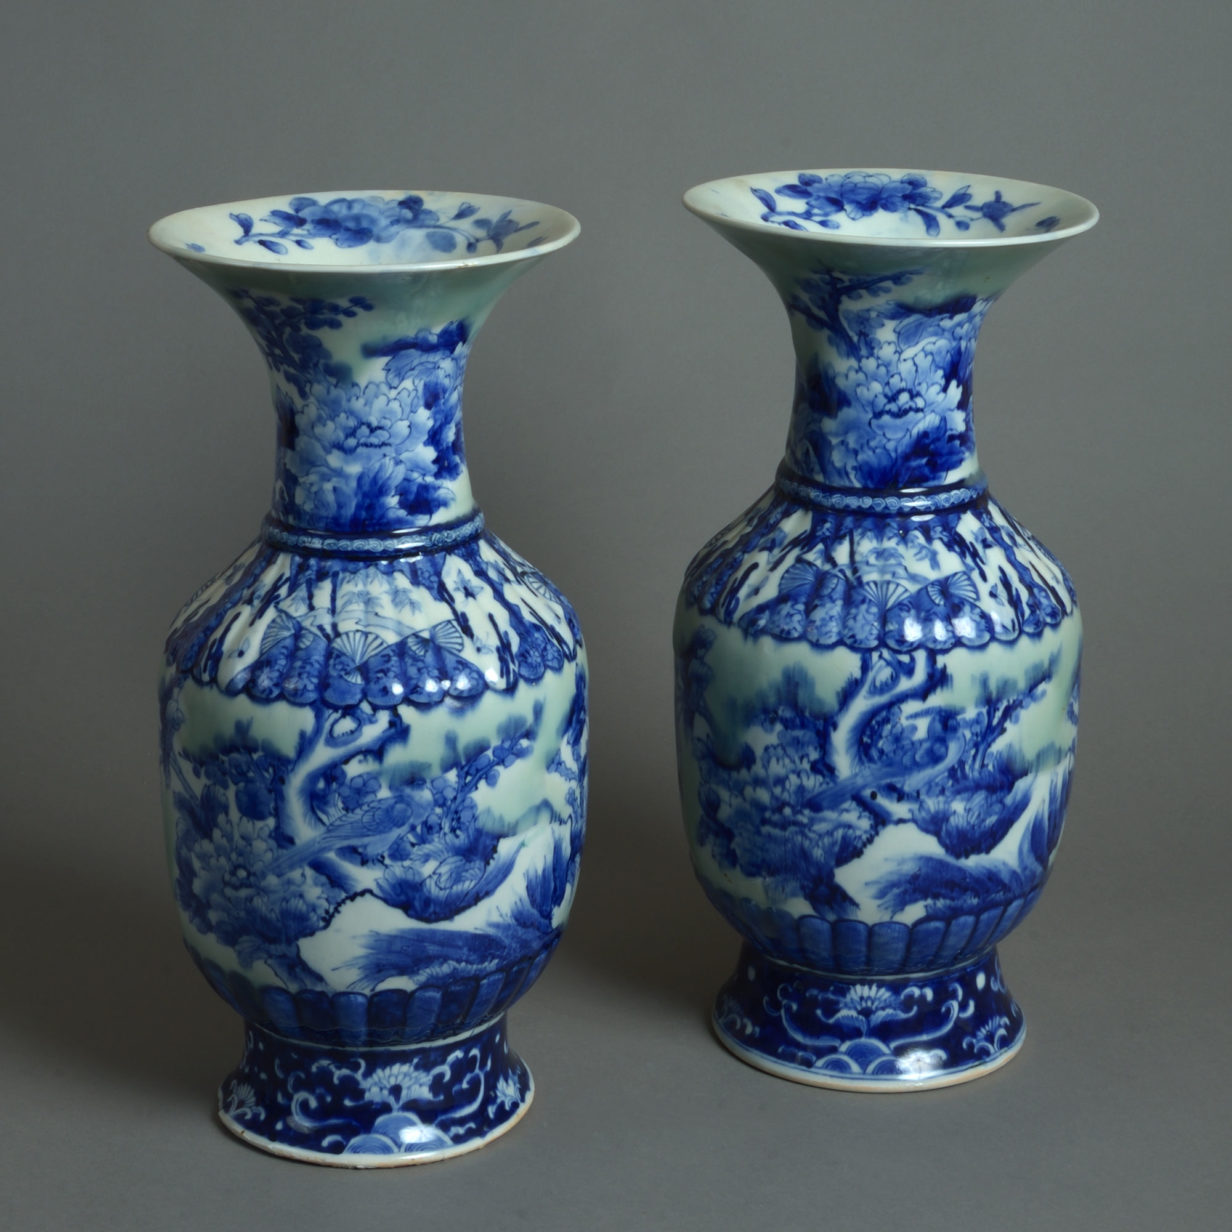 19th century pair of celadon, blue & white glazed vases